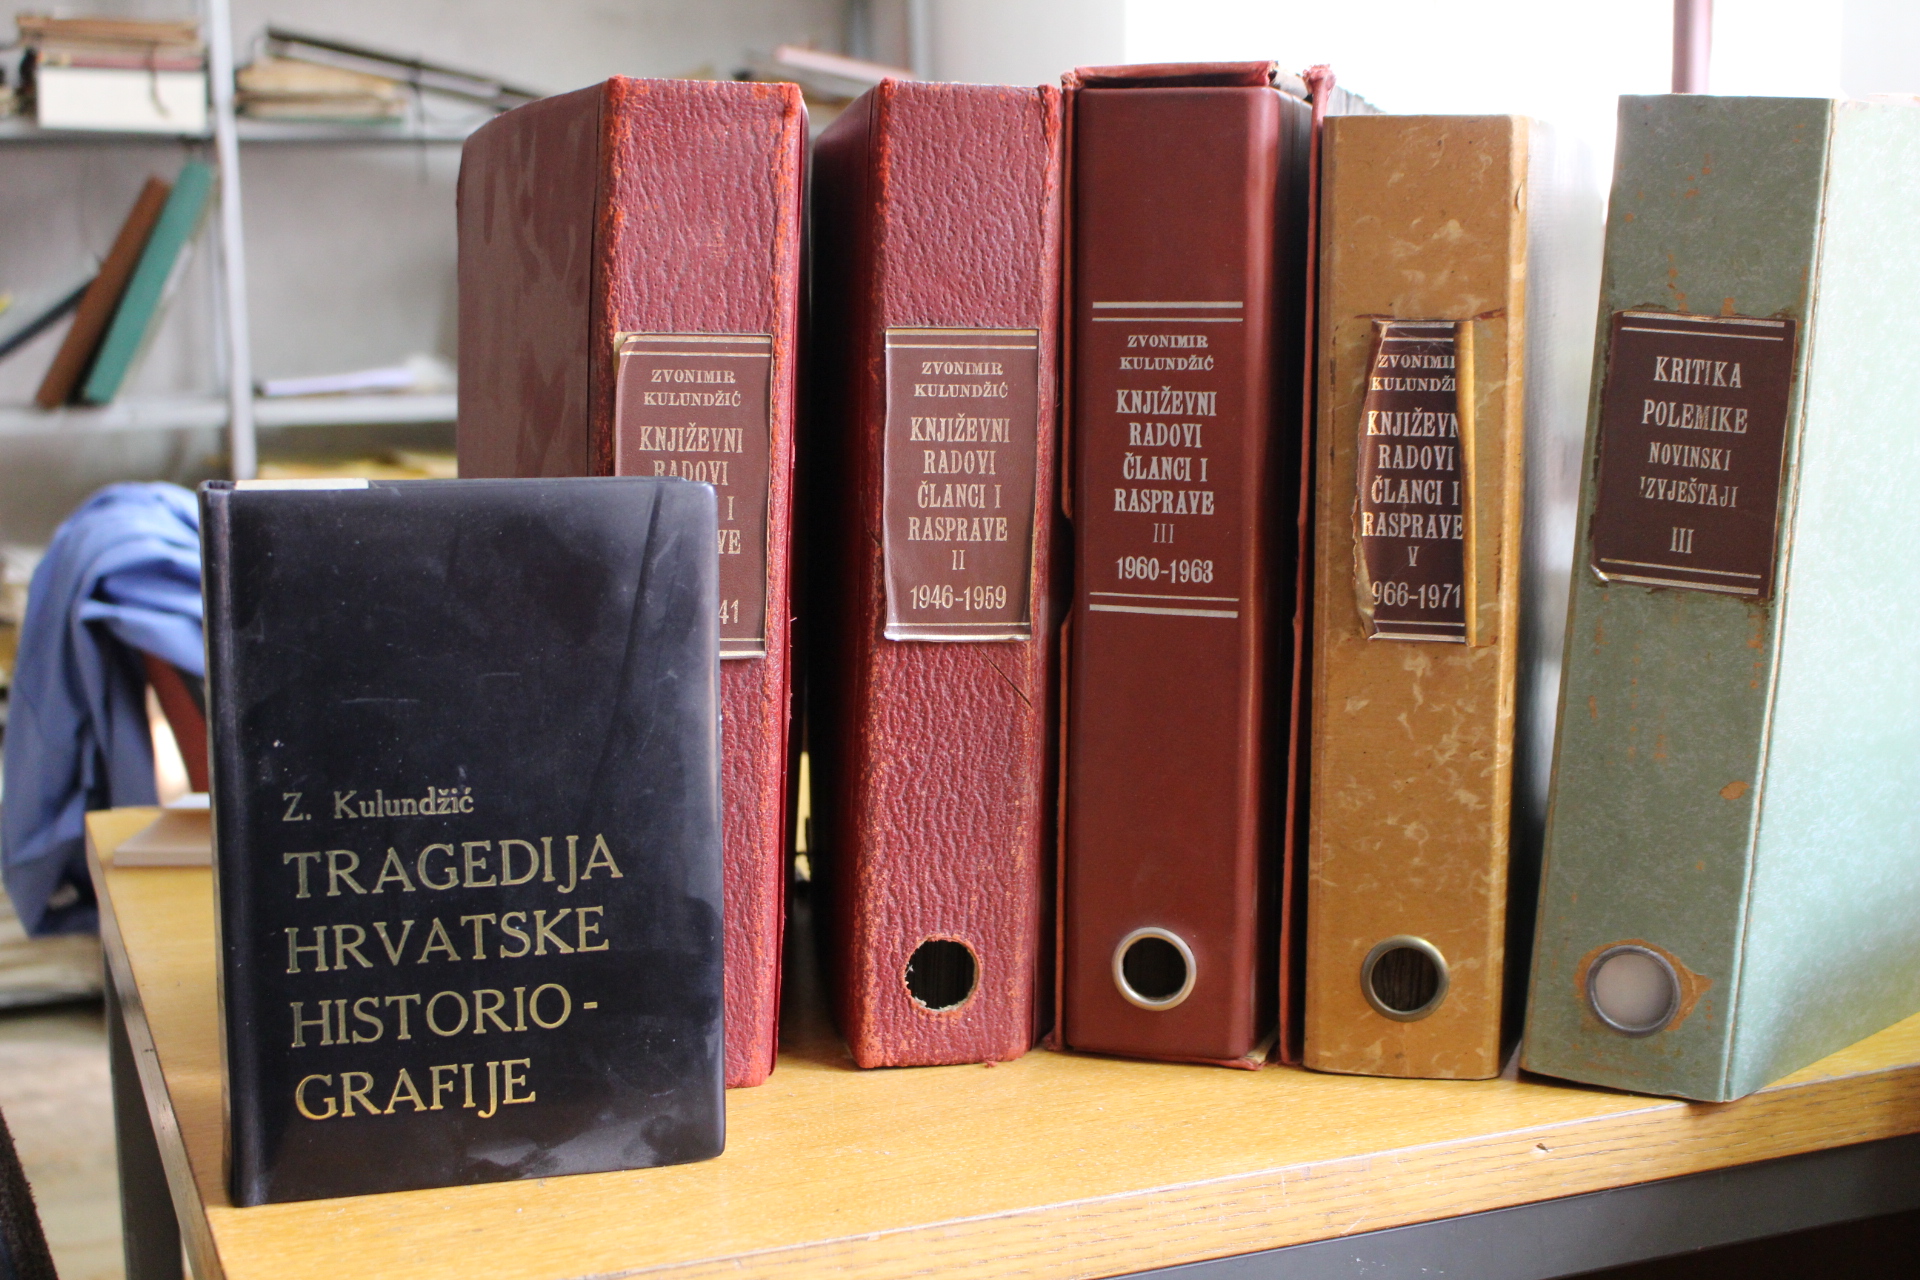 Registratori s objavljenim člancima Zvonimira Kulundžića i njegova knjiga Tragedija hrvatske historiografije u Državnom arhivu u Osijeku (15_3_2017) 